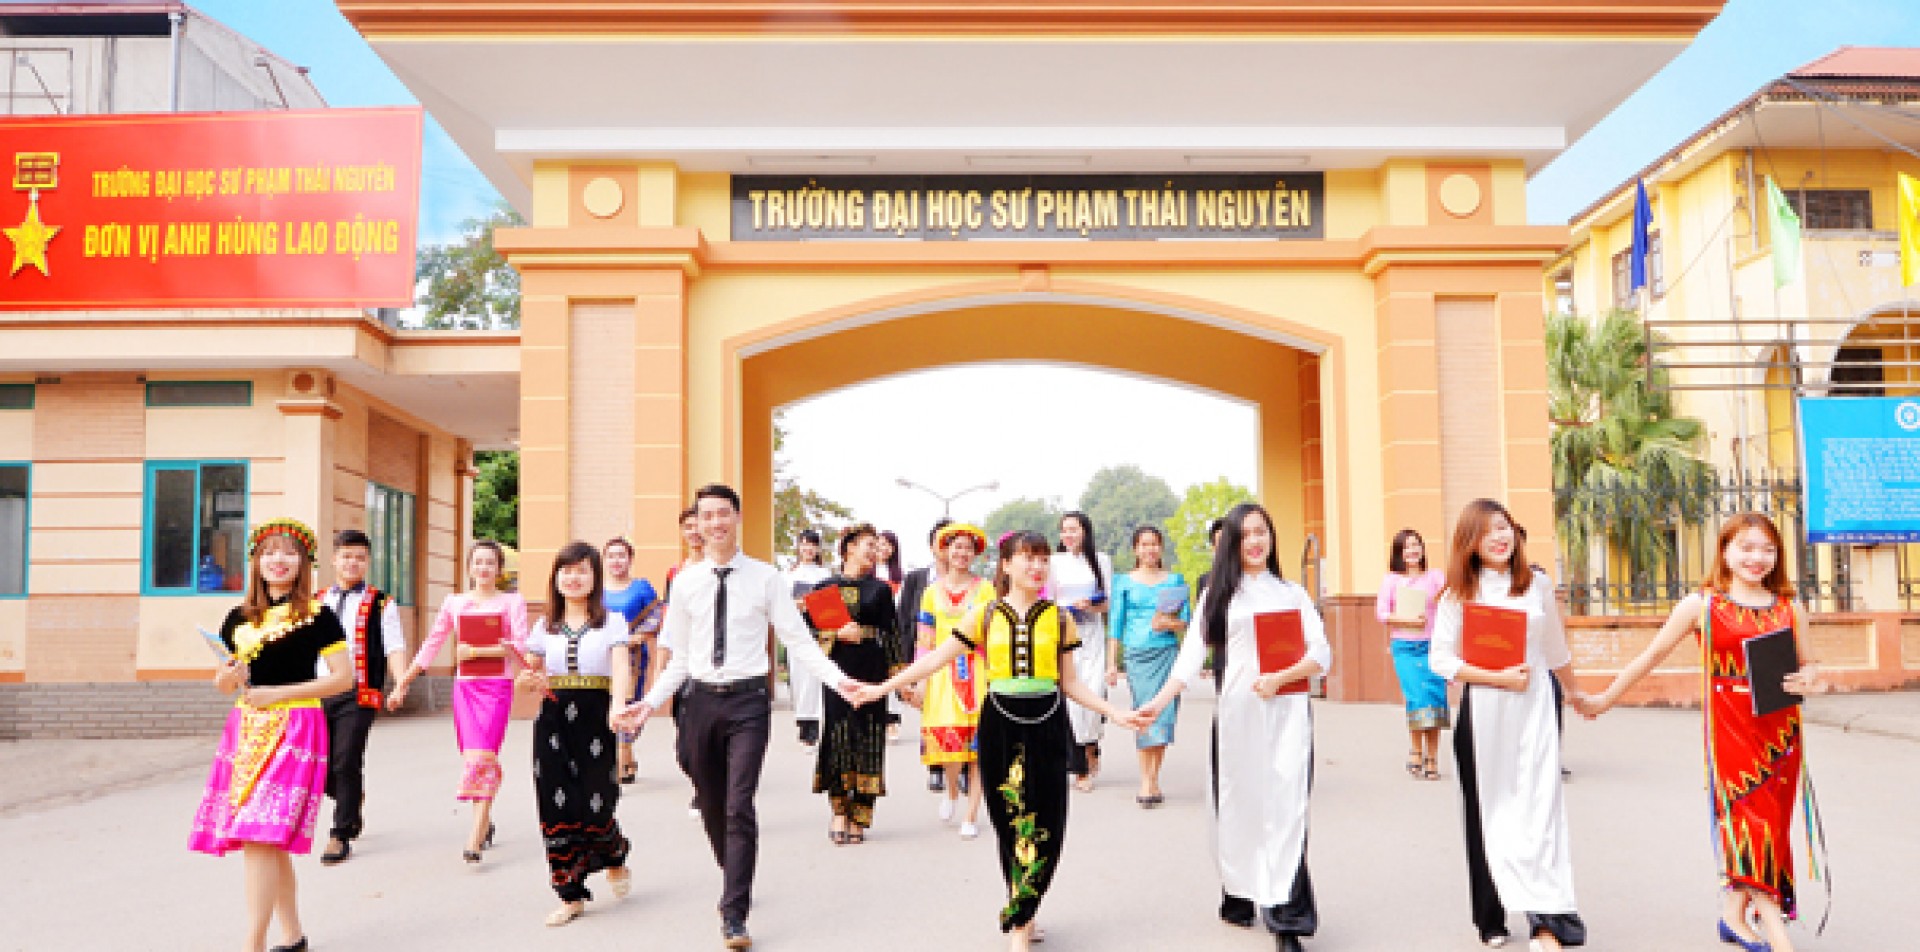 Thông tin tuyển sinh mới nhất 2019 của Trường Đại học Sư phạm – Đại học Thái Nguyên